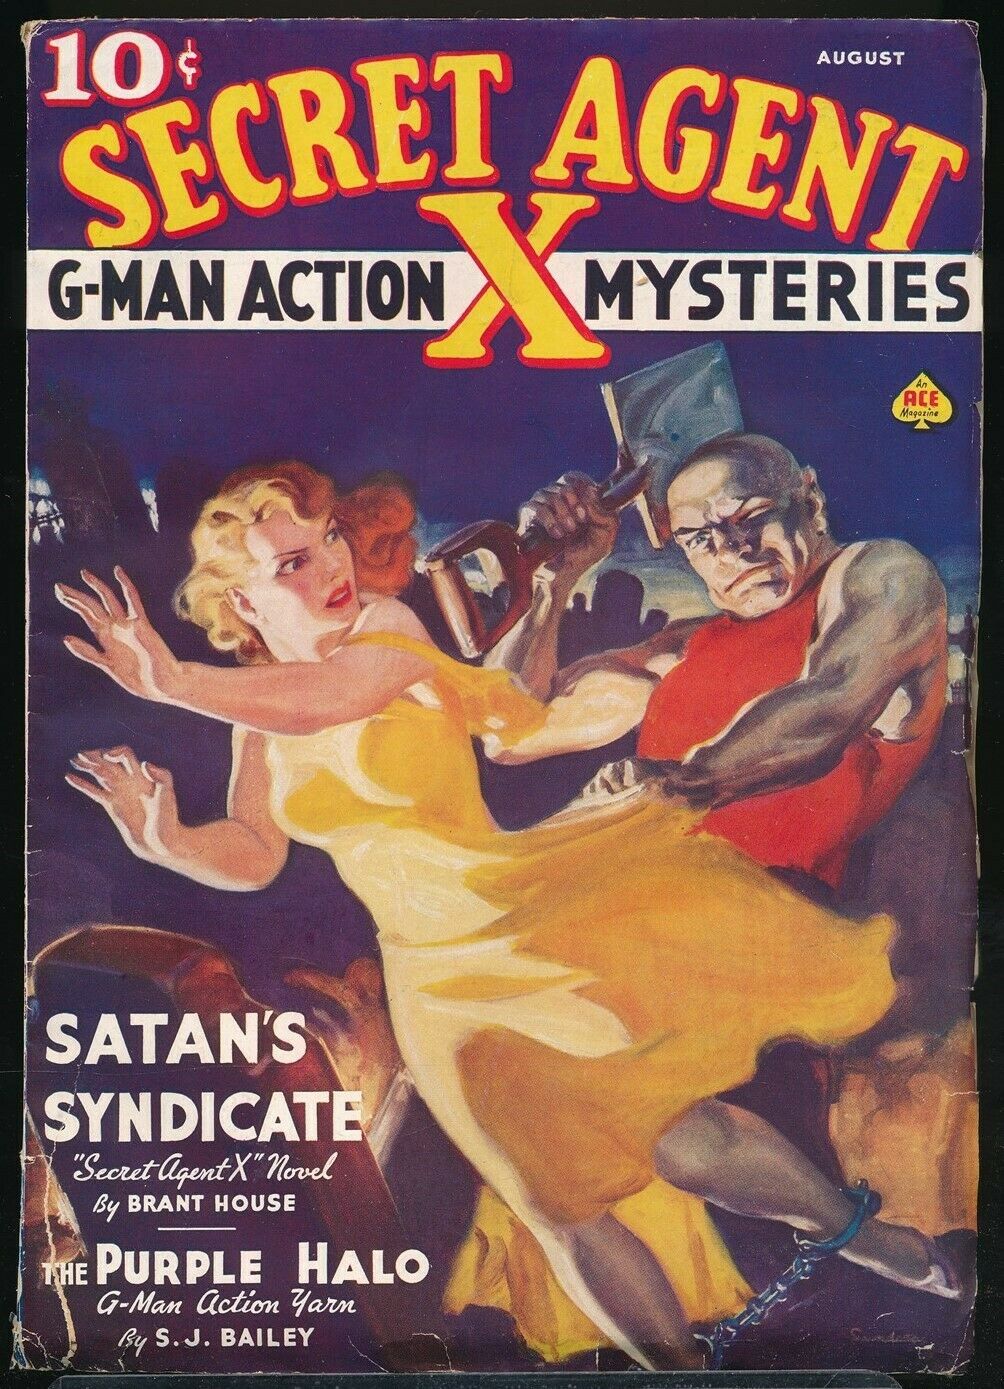 Secret Agent X - August 1937